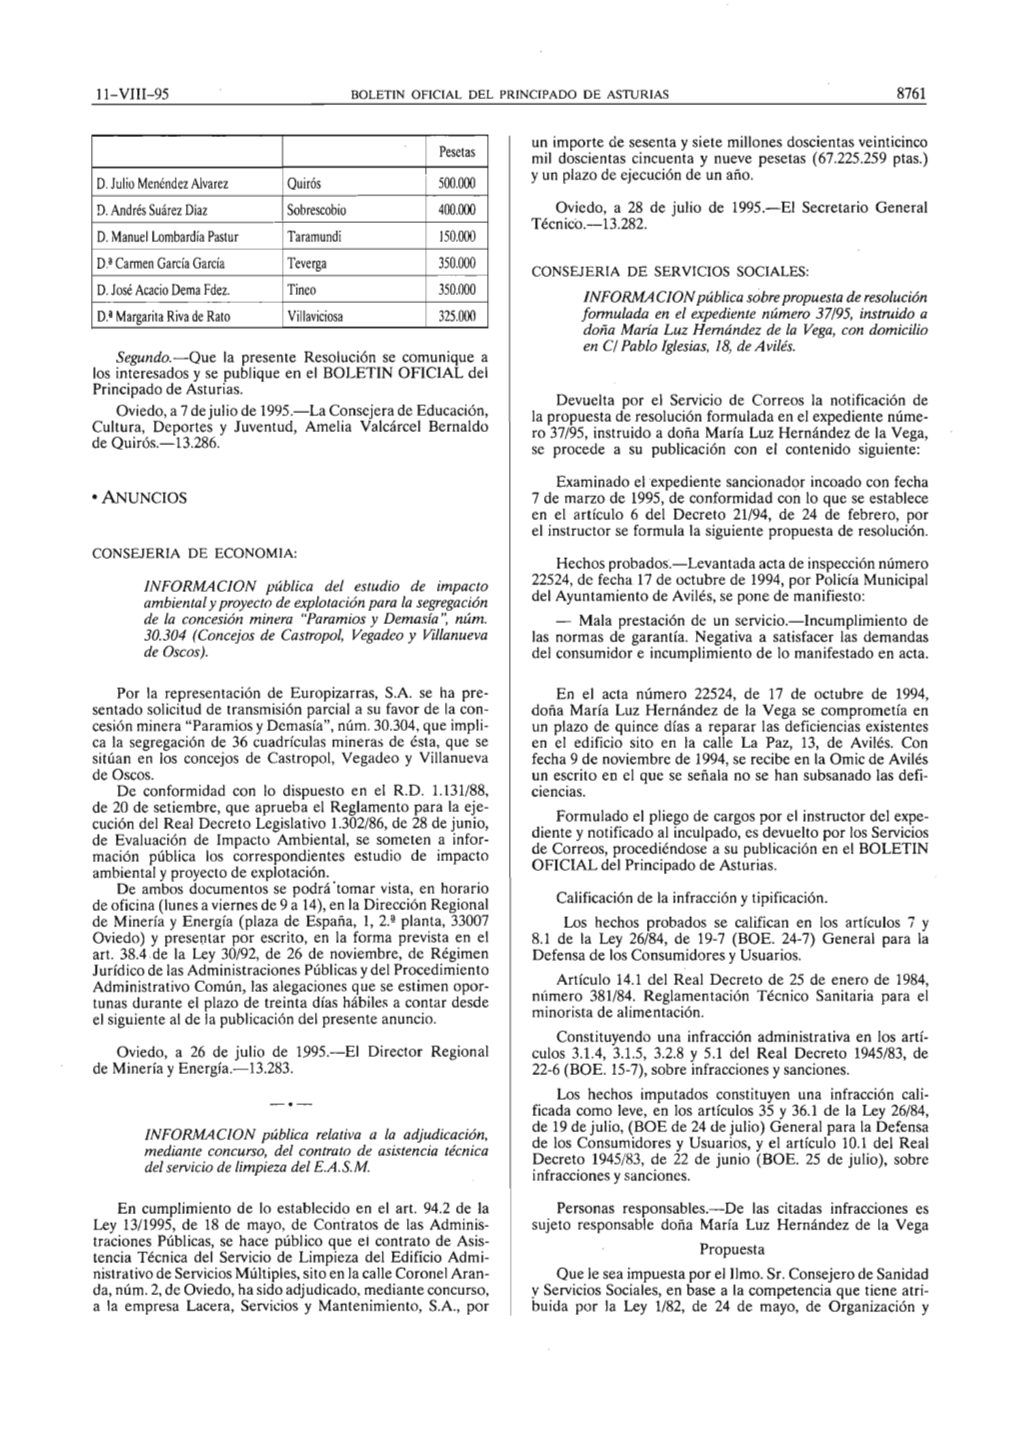 Ll-VIII-95 8761 Pesetas D.Juliomenendezalvarez Quiros